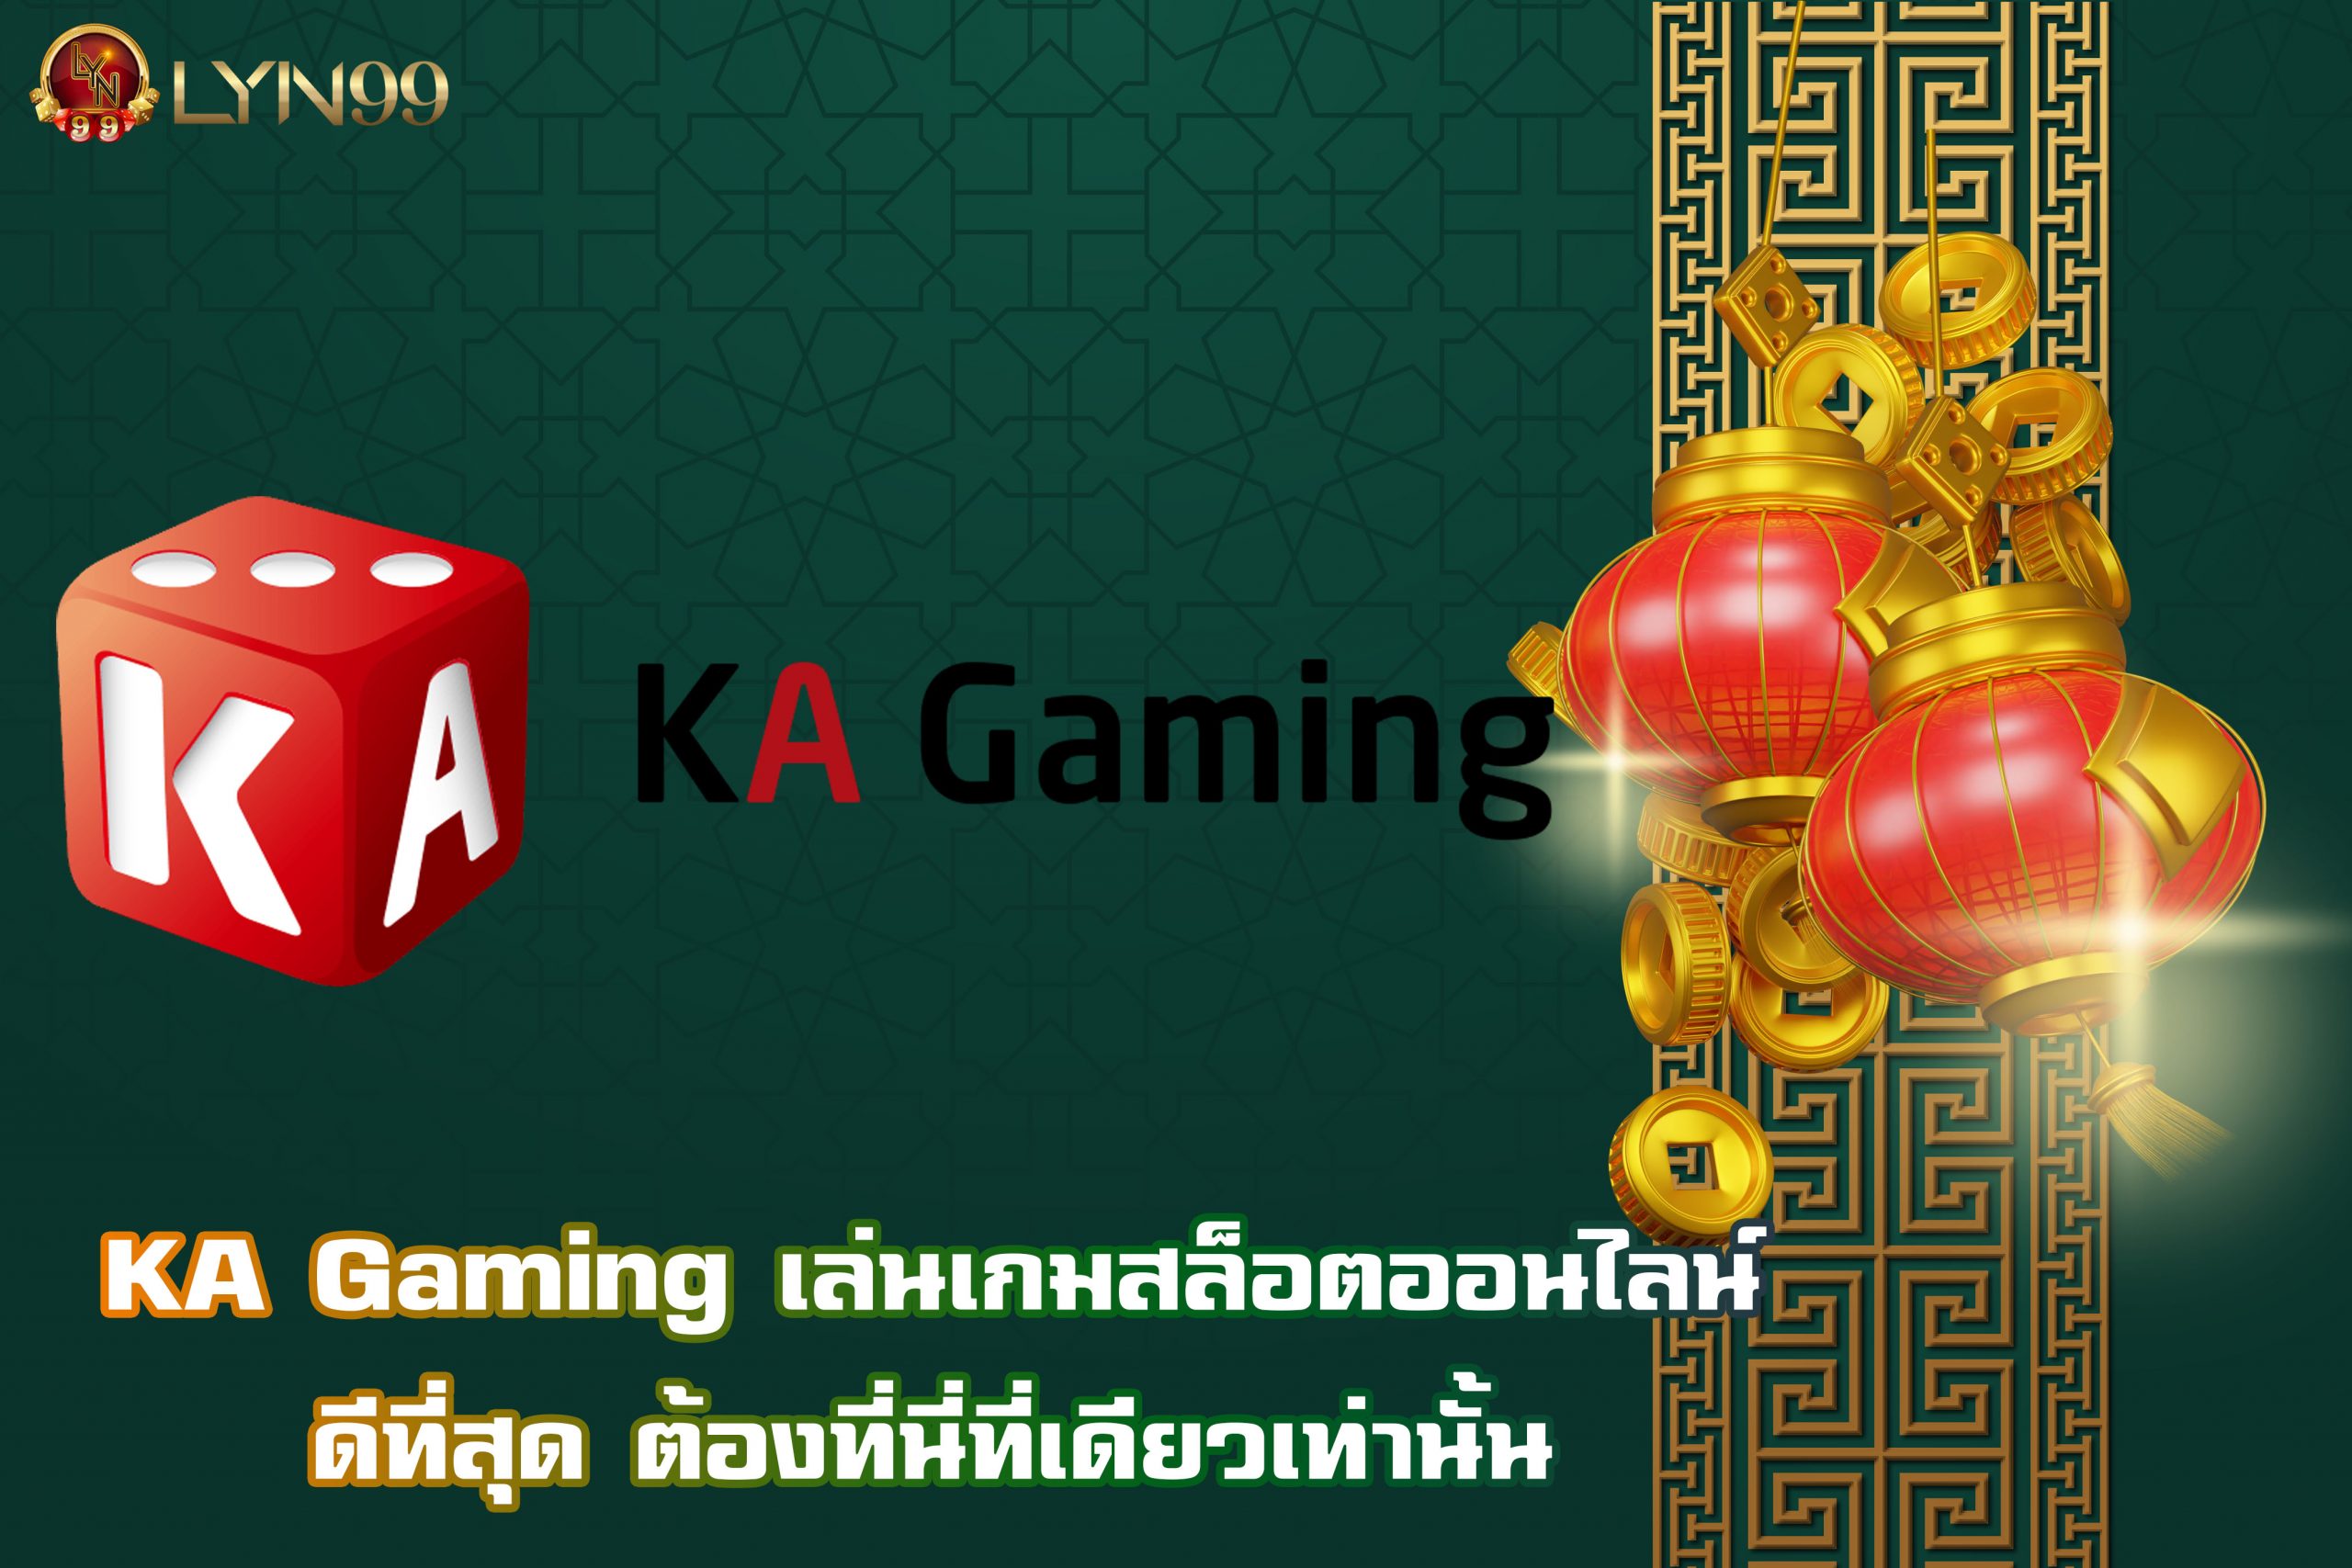 KA Gaming เล่นเกมสล็อตออนไลน์ดีที่สุด ต้องที่นี่ที่เดียวเท่านั้น